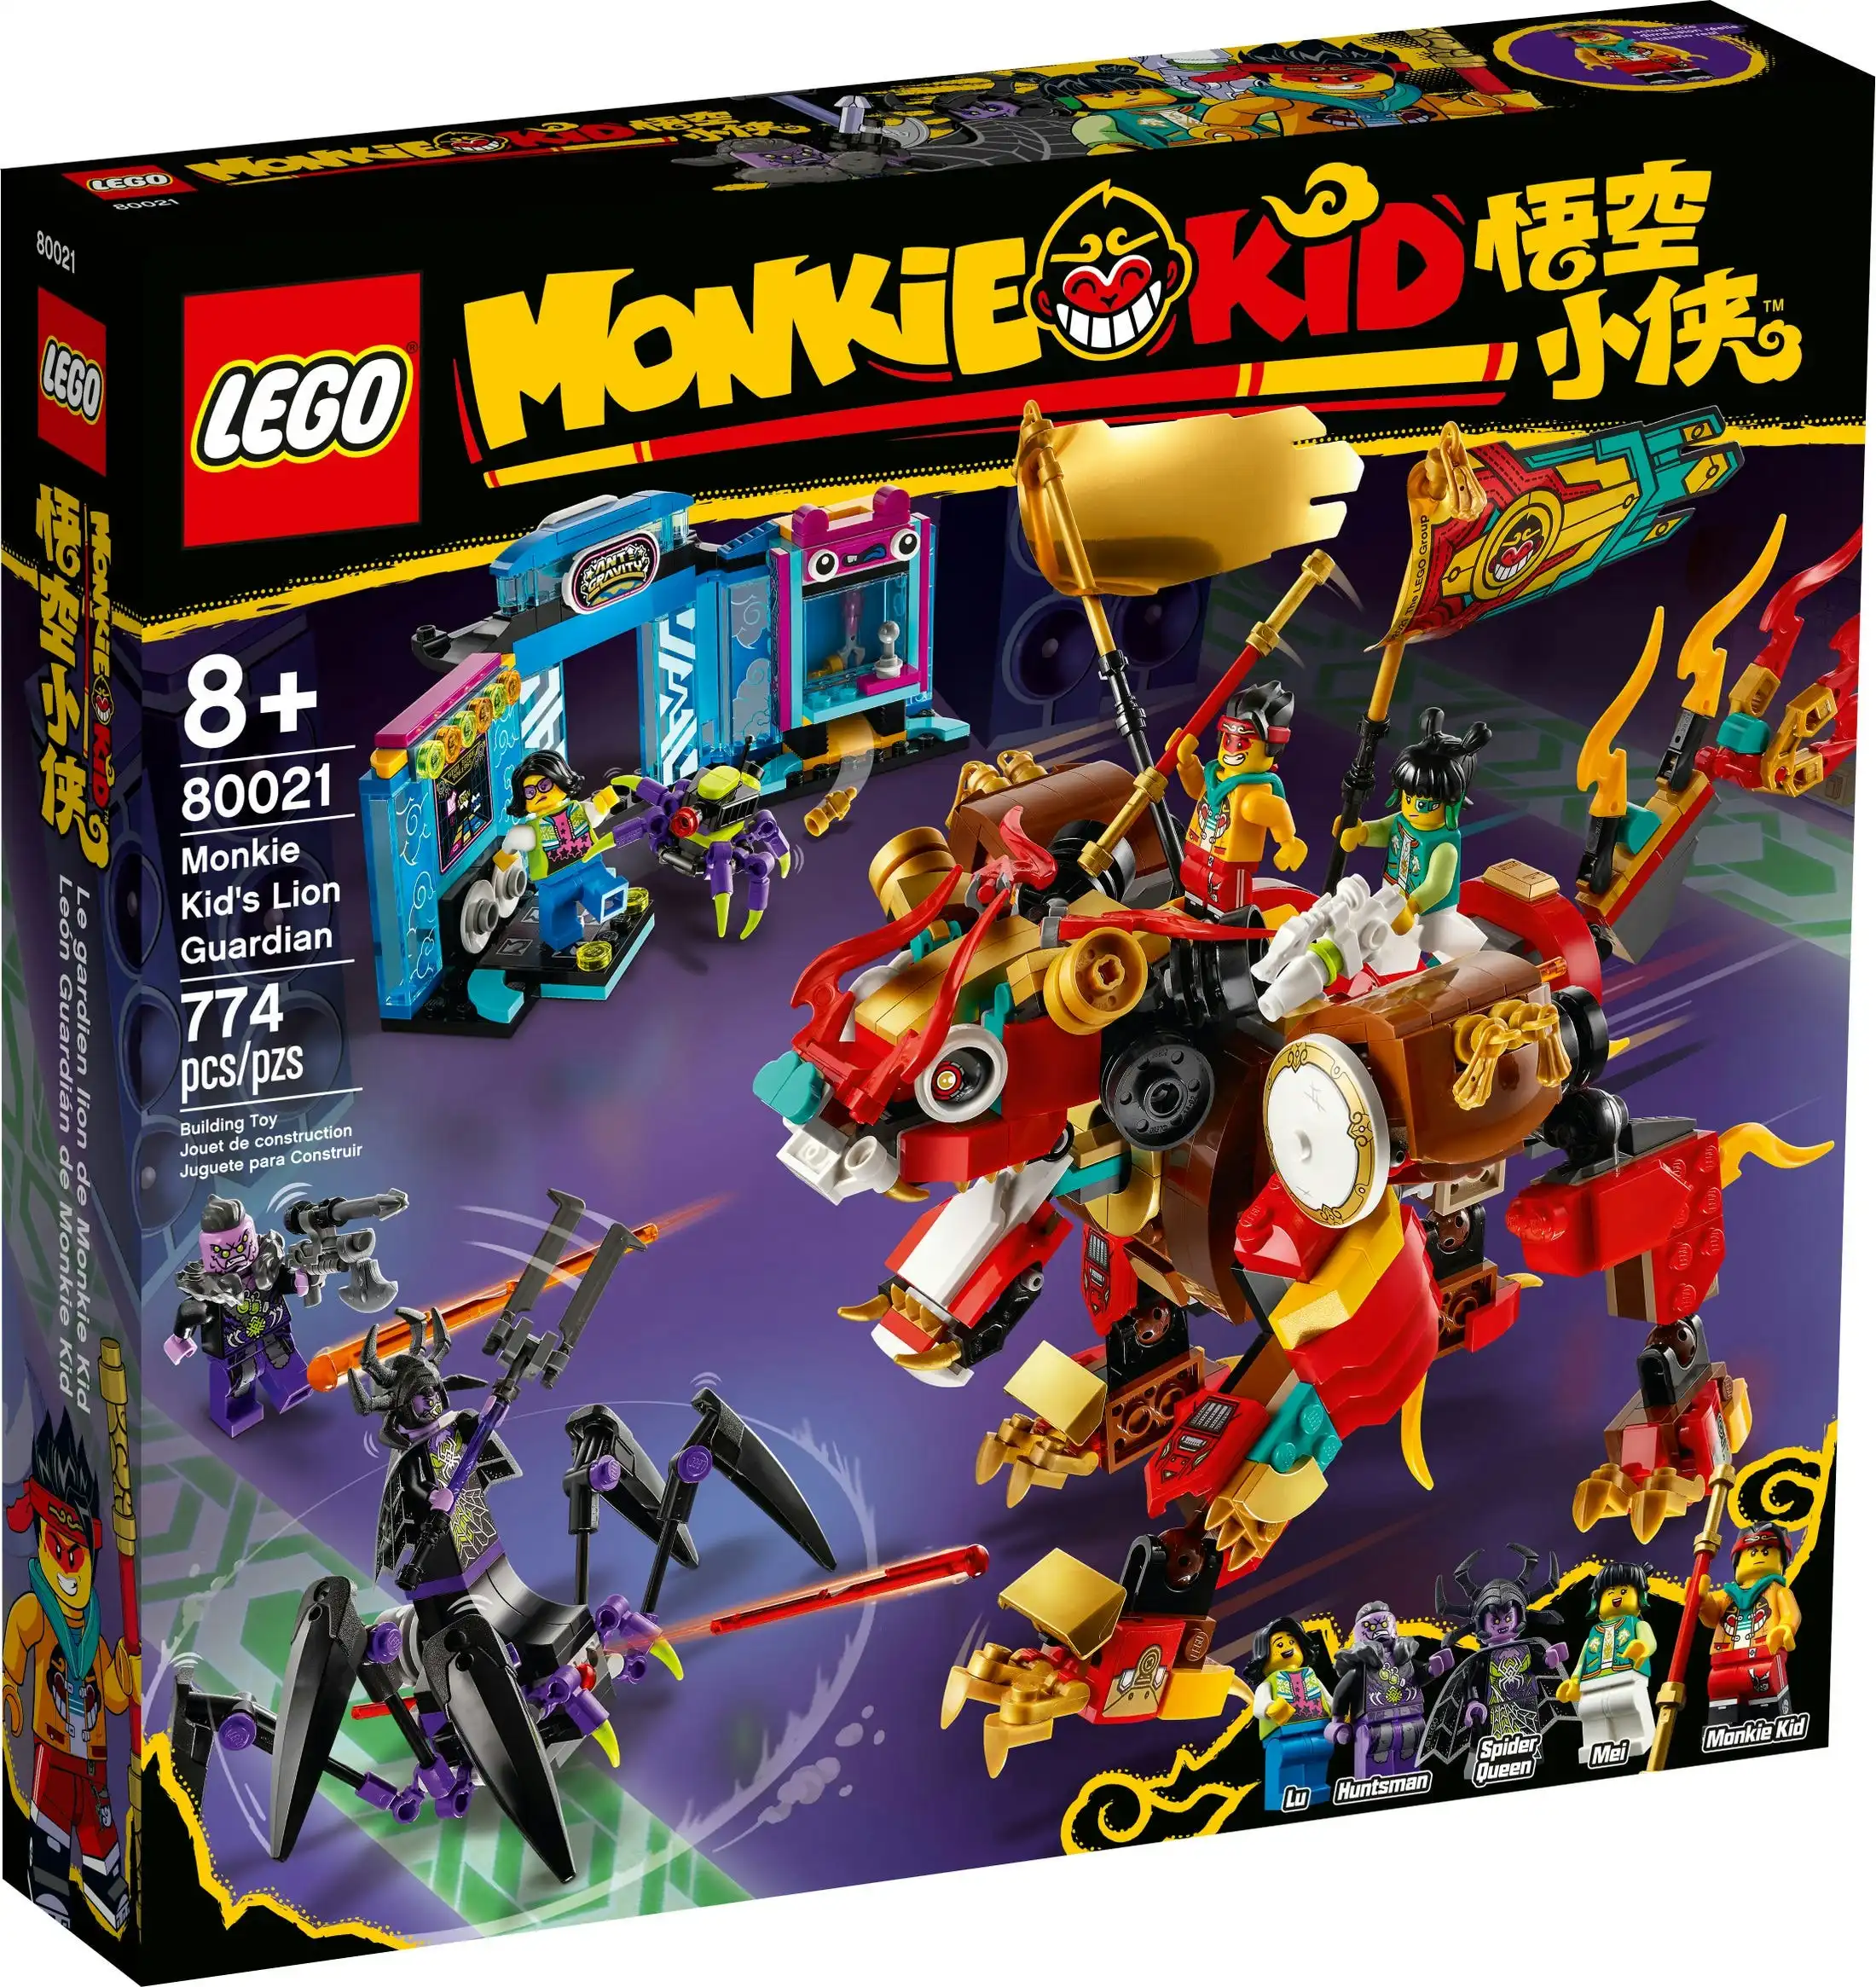 LEGO 80021 Monkie Kid's Lion Guardian - Monkie Kid